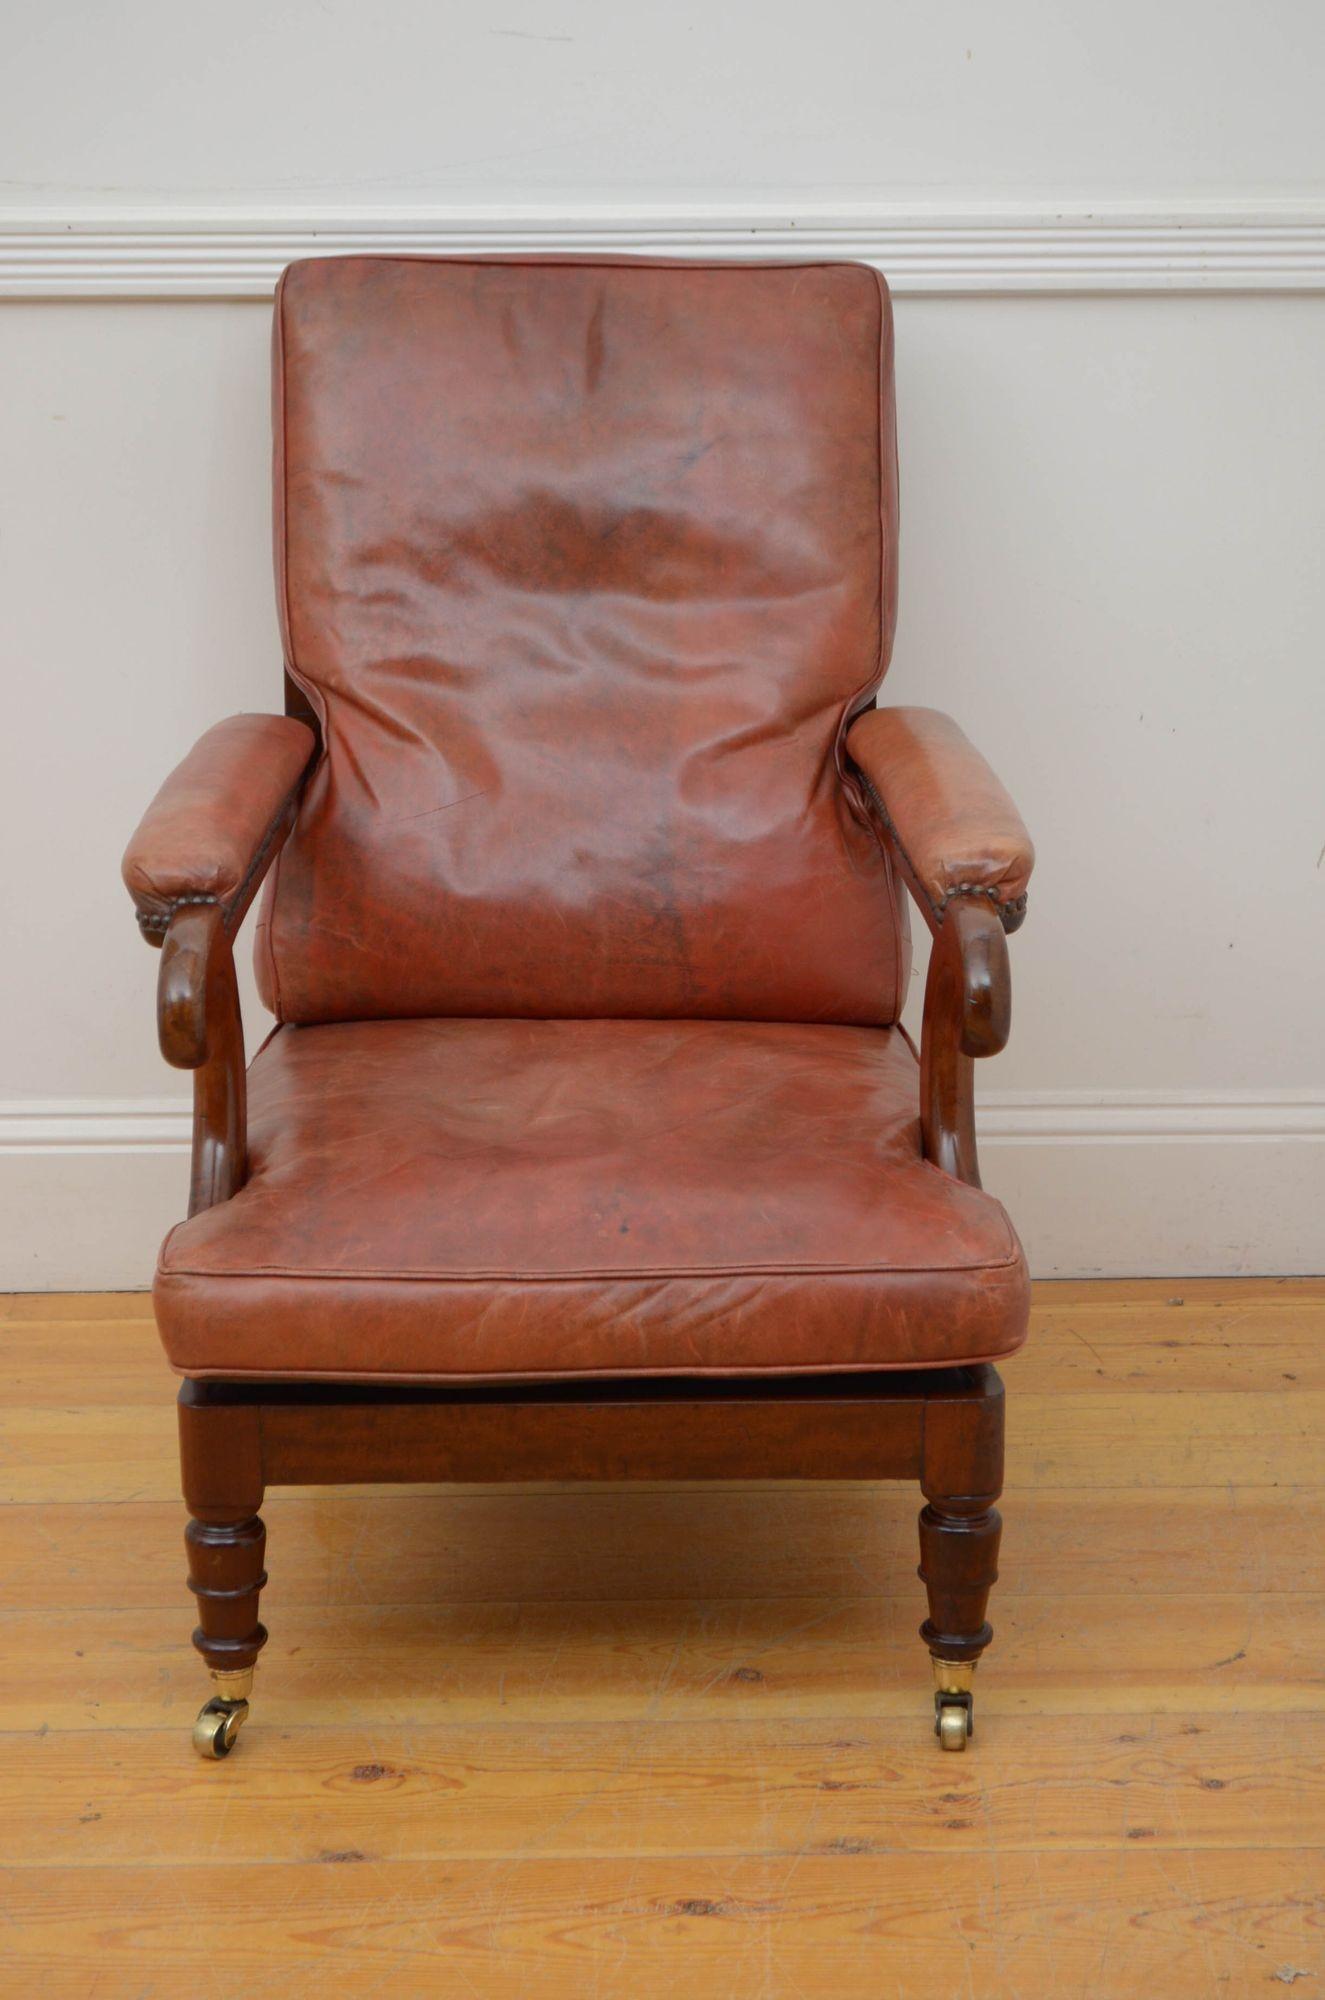 A05 Hochwertiger Bibliotheksstuhl aus georgianischem Mahagoni, Rückenlehne mit marronem Lederpolster, großzügiger Sitz und ledergepolsterte Armlehnen, alles auf gedrechselten Beinen mit Messingrollen. Dieser antike Sessel stammt von einem privaten